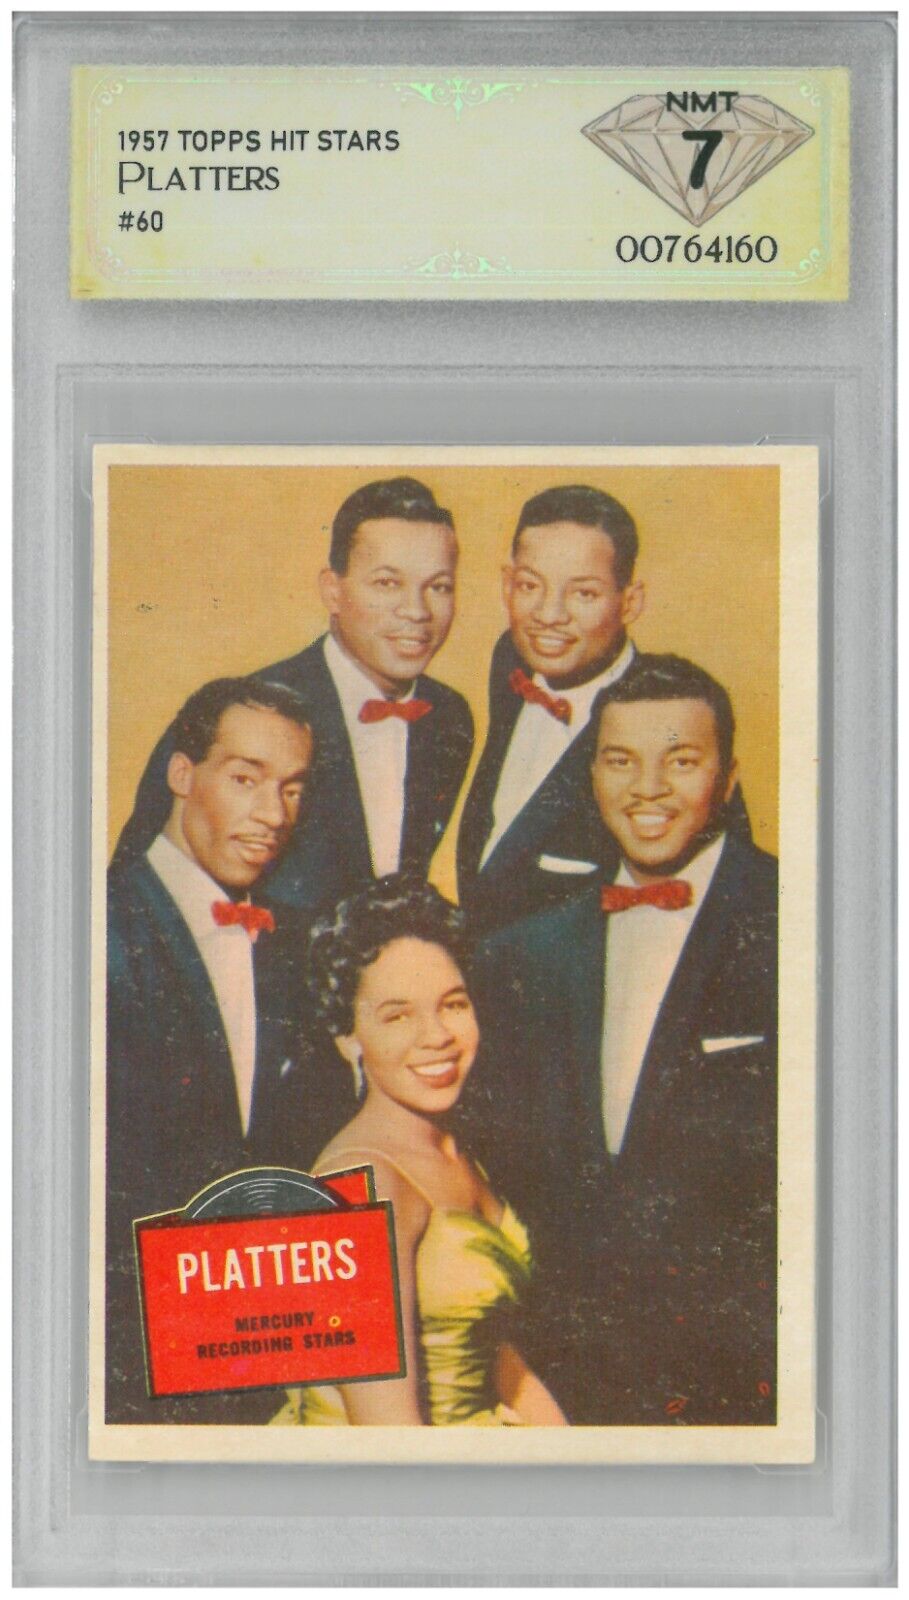 1957 Topps Hit Stars PLATTERS #60 💎 DSG 7 NM